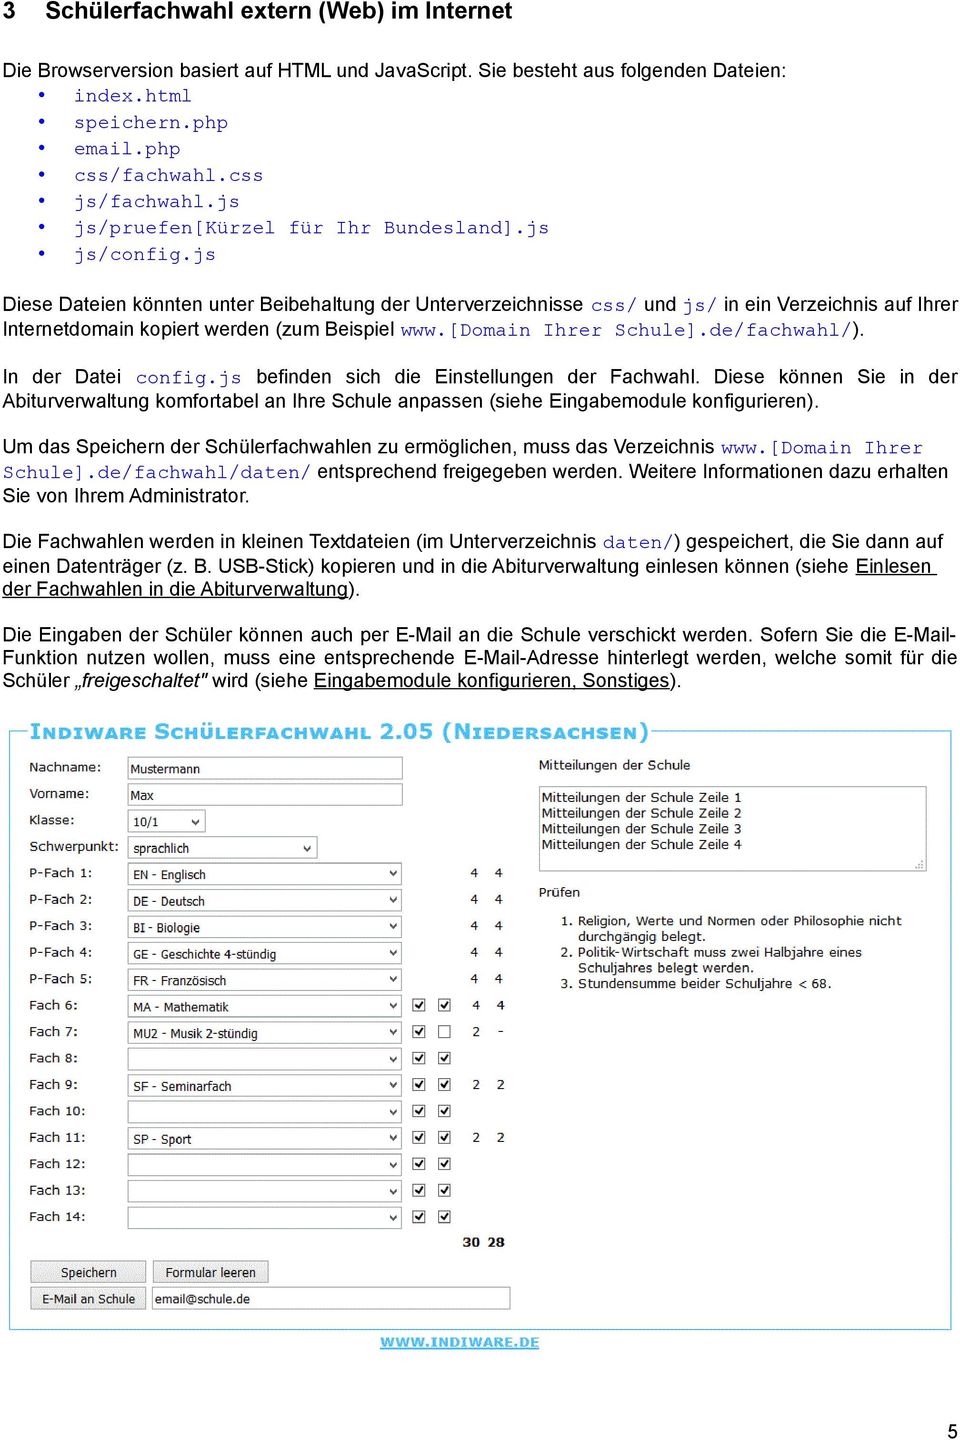 js Diese Dateien könnten unter Beibehaltung der Unterverzeichnisse css/ und js/ in ein Verzeichnis auf Ihrer Internetdomain kopiert werden (zum Beispiel www.[domain Ihrer Schule].de/fachwahl/).